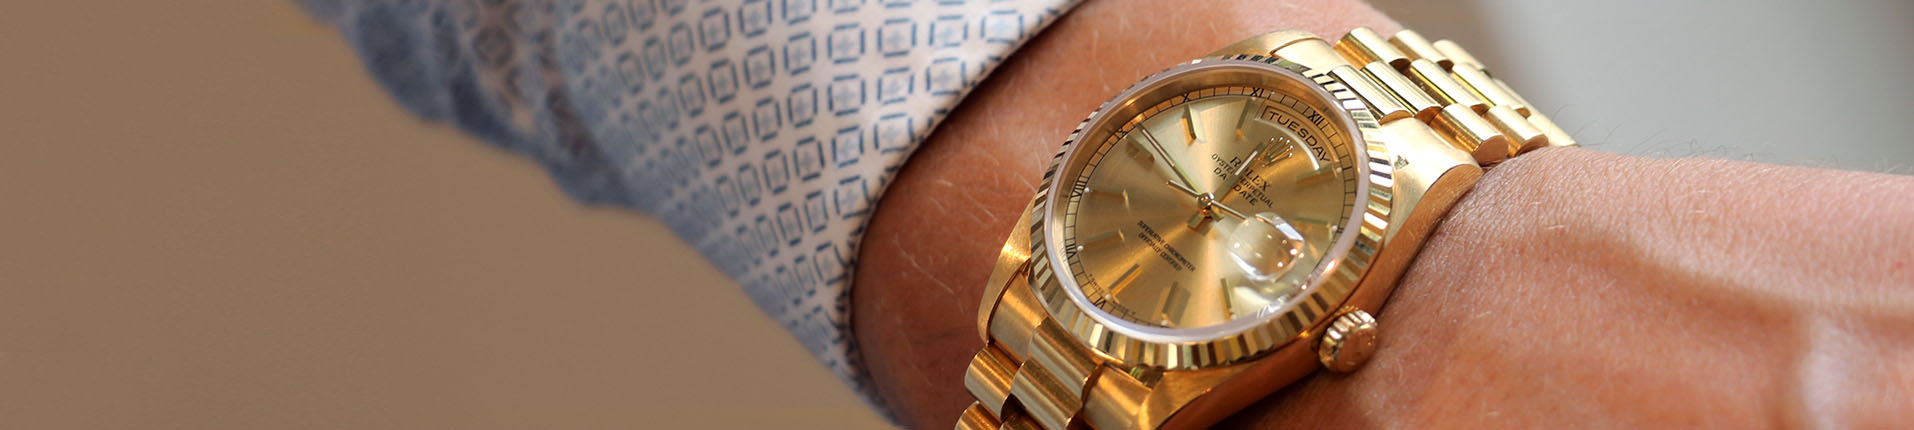 gouden horloge verkopen bij Goudwisselkantoor